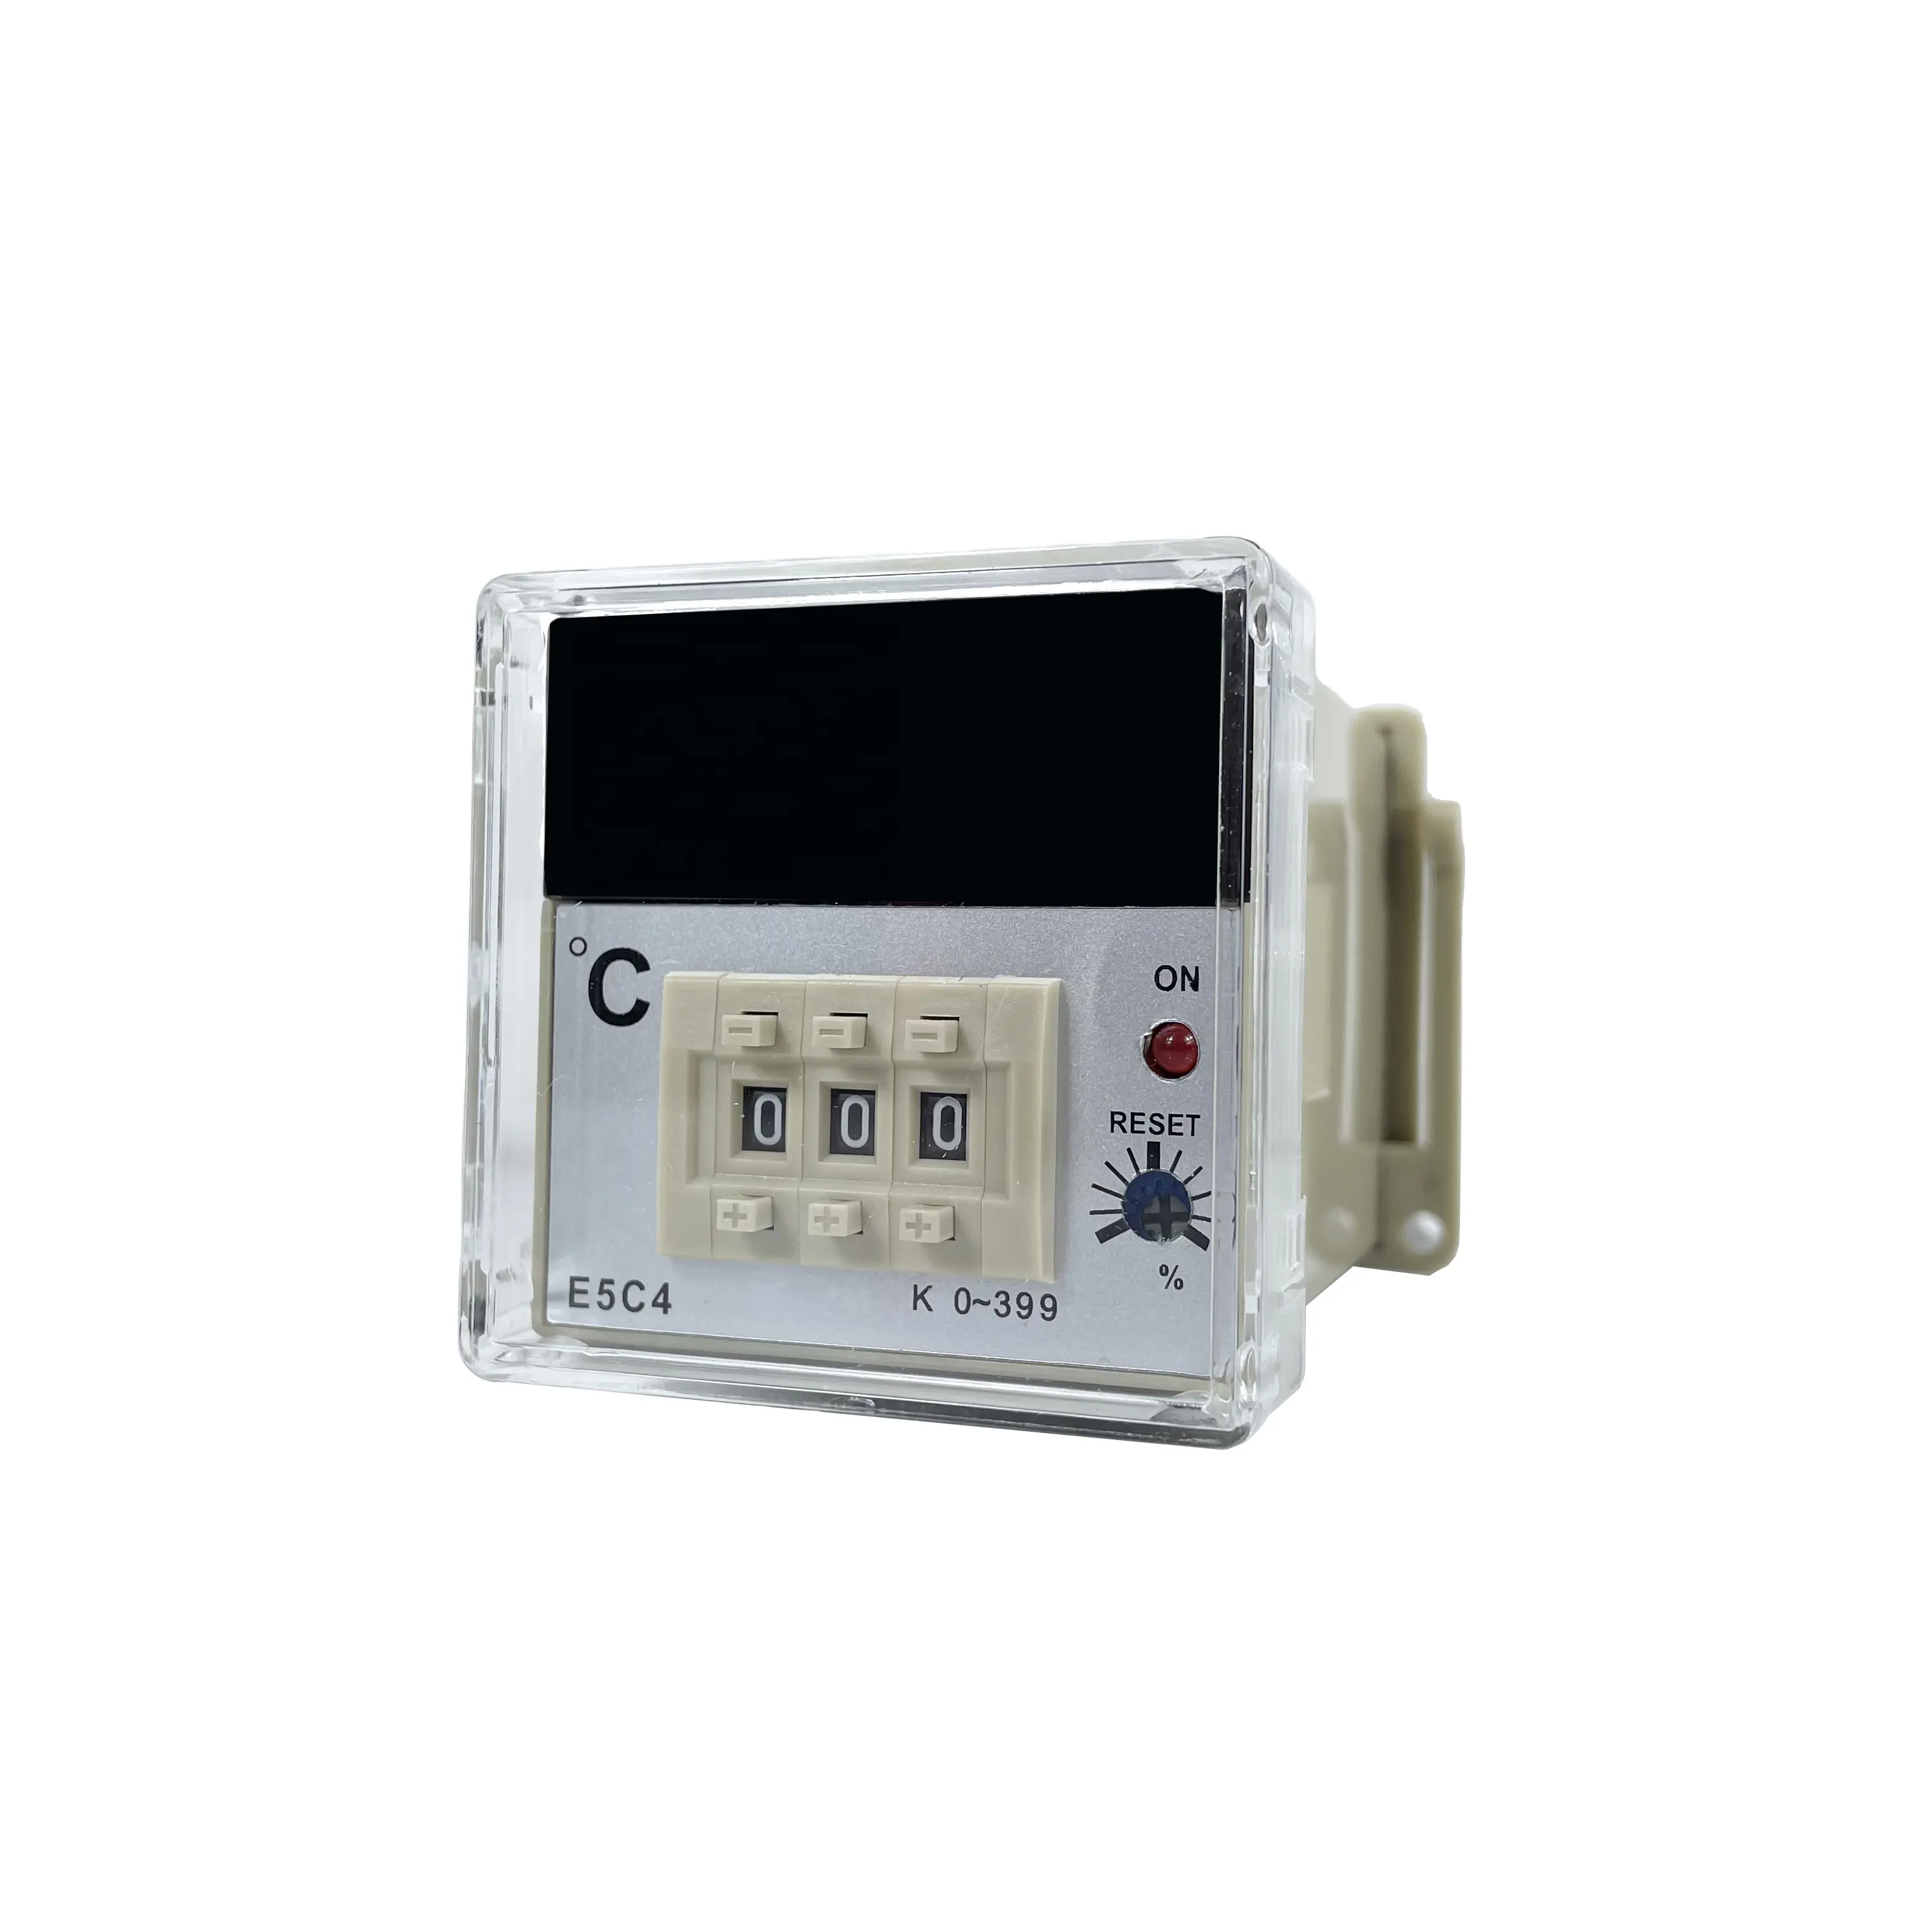 NIN FREE SAMPLE Neue Produkte innovatives Produkt LCD Digital PID Temperatur regler E5C4 Plug-in-Typen